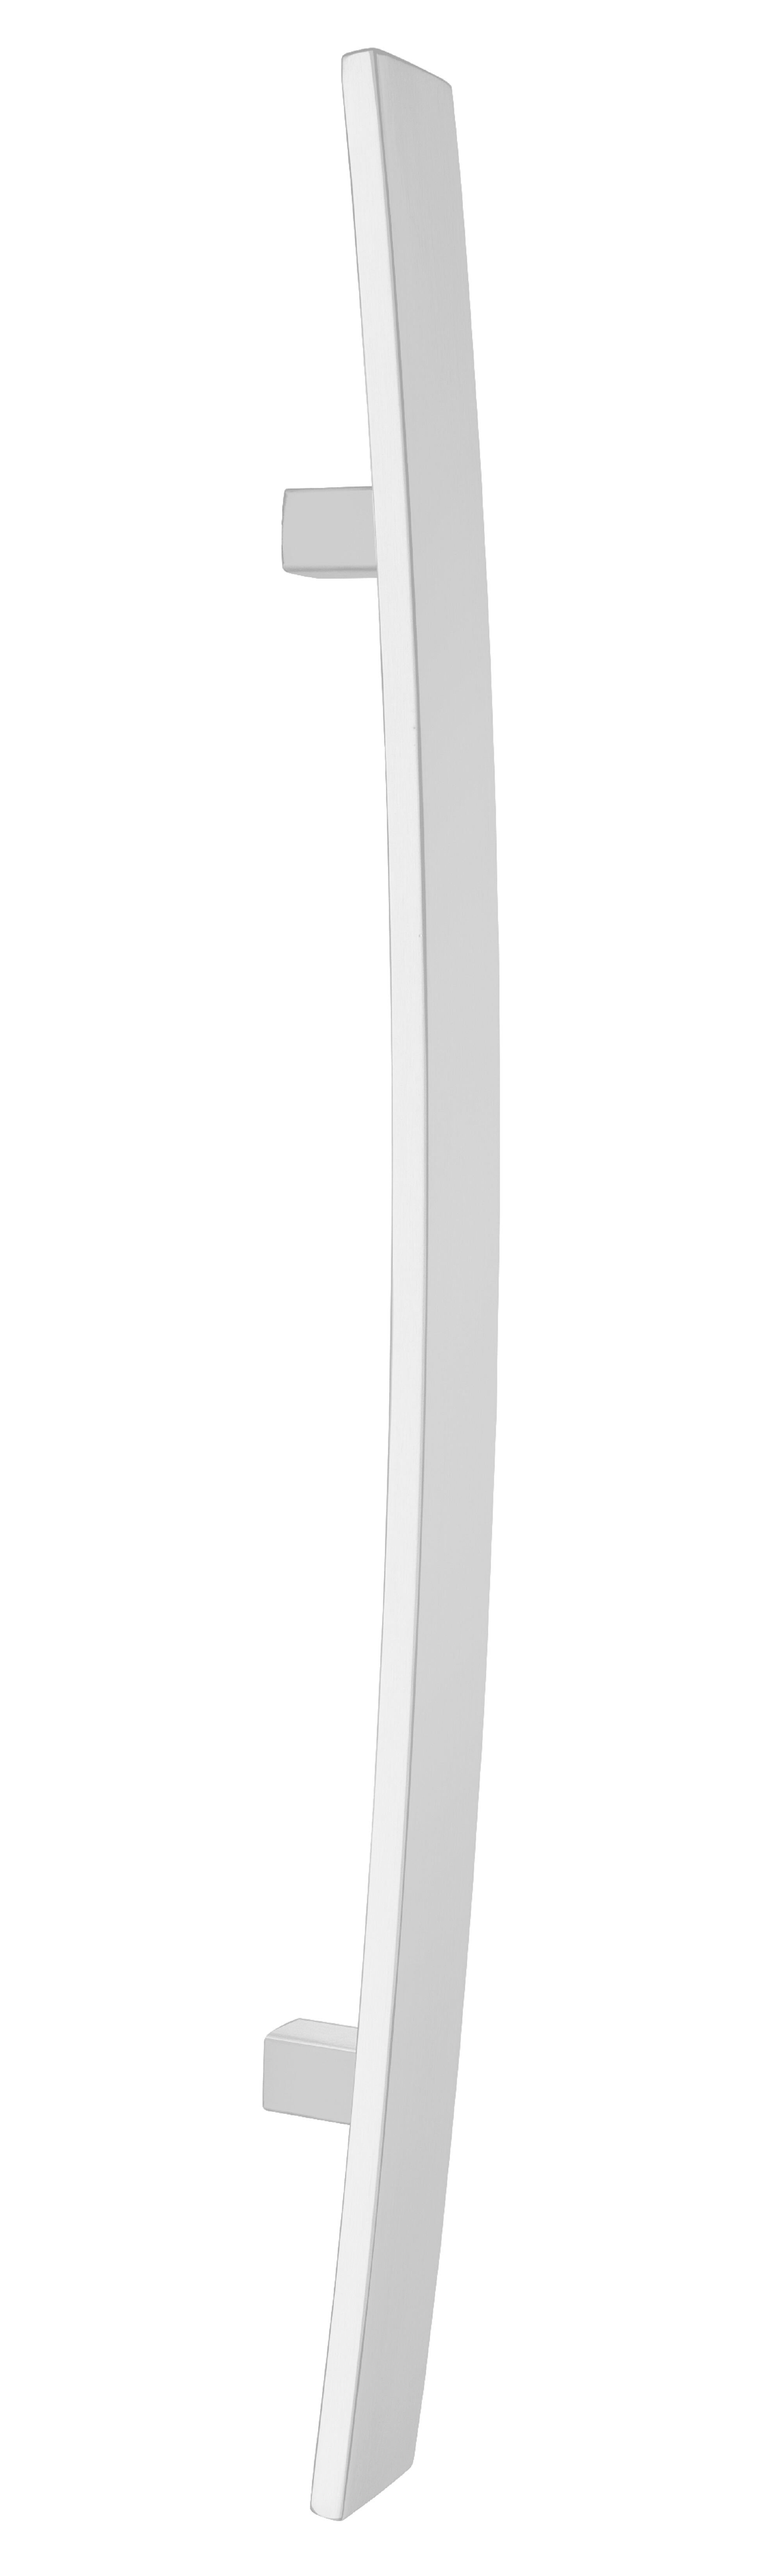 Manillón curvo inox 1000mm 780mm epoxi blanco